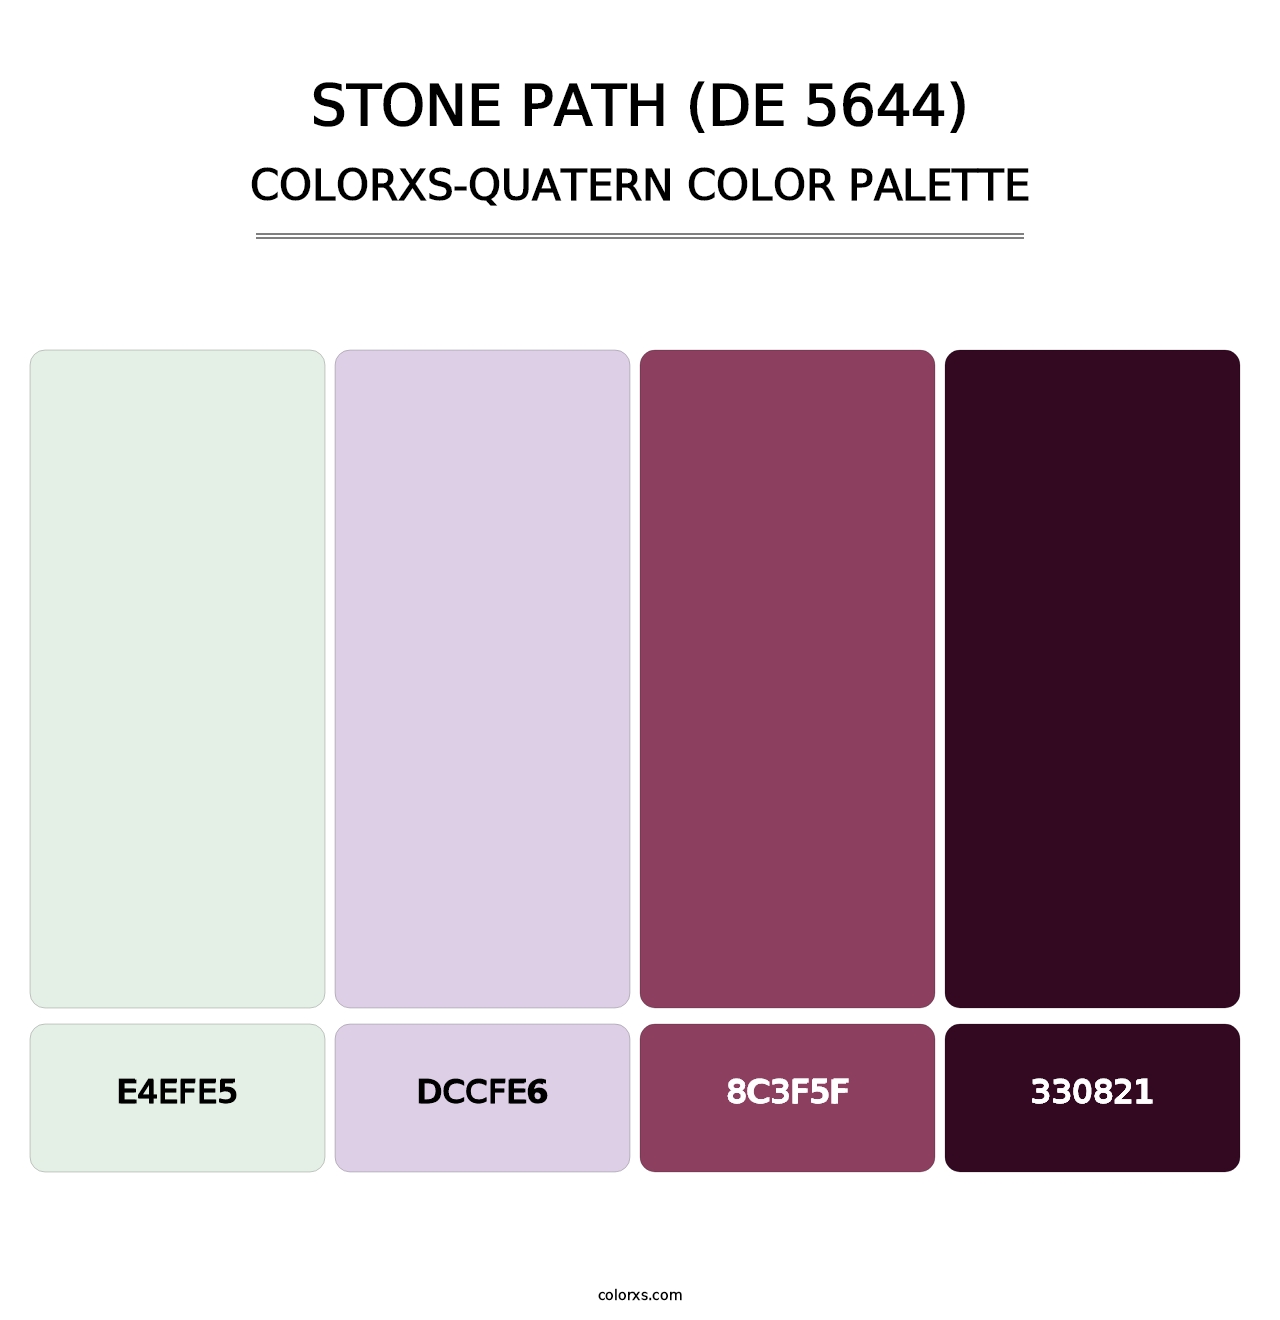 Stone Path (DE 5644) - Colorxs Quatern Palette